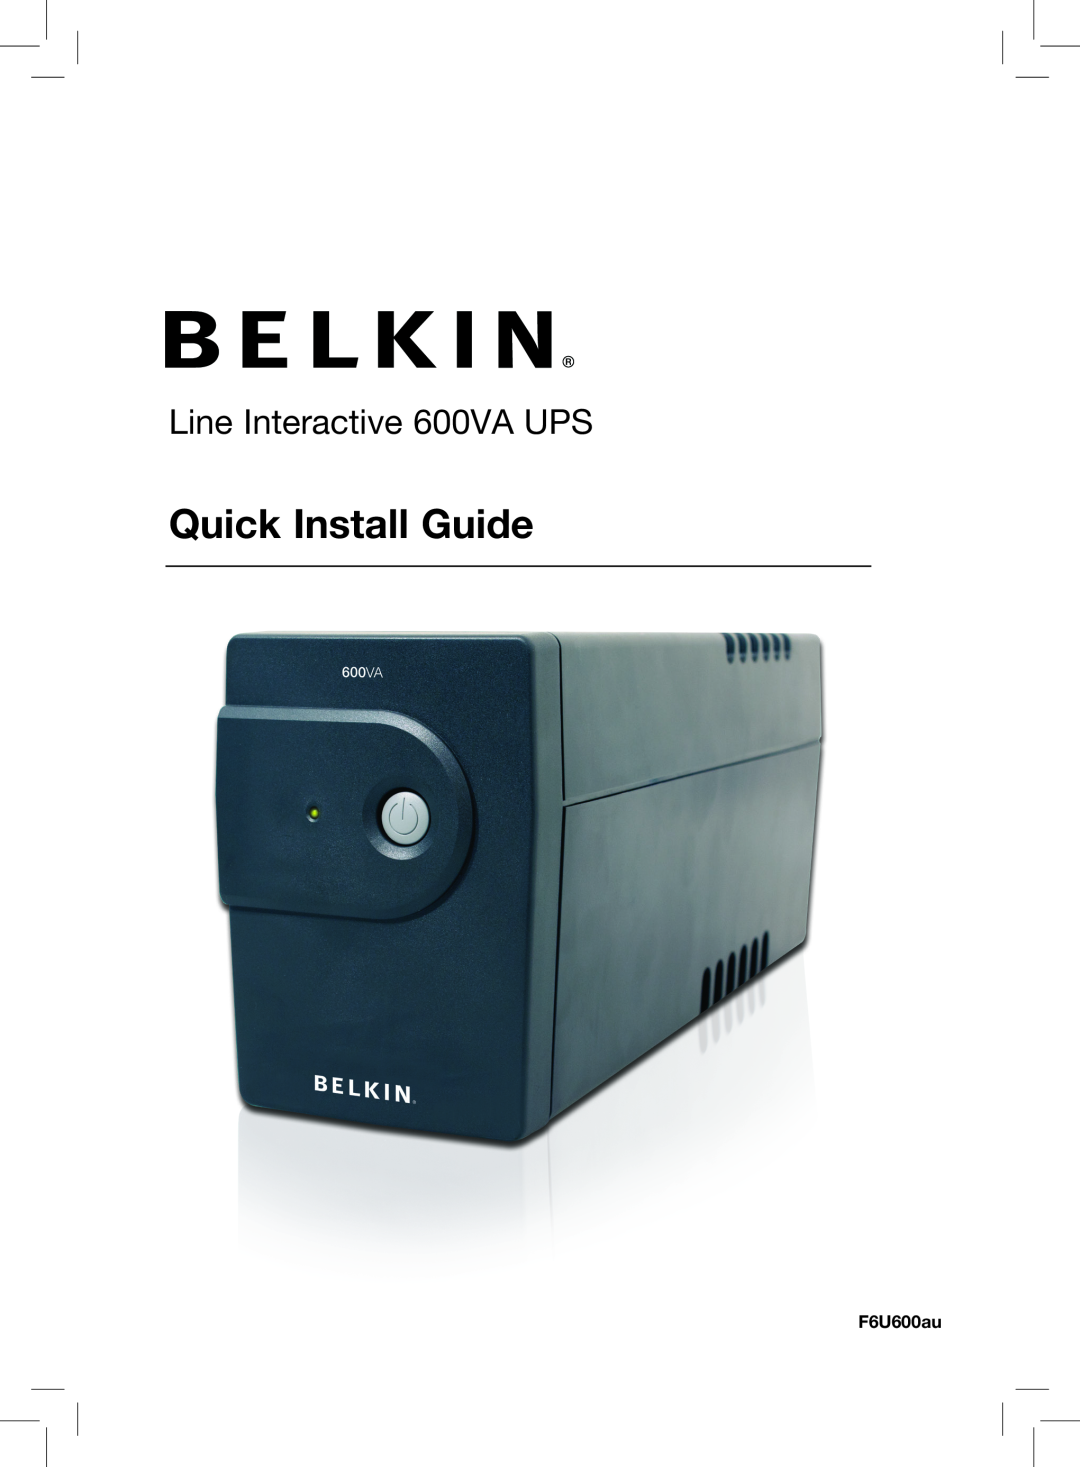 Belkin F6U600AU manual Quick Install Guide, Line Interactive 600VA UPS, F6U600au 